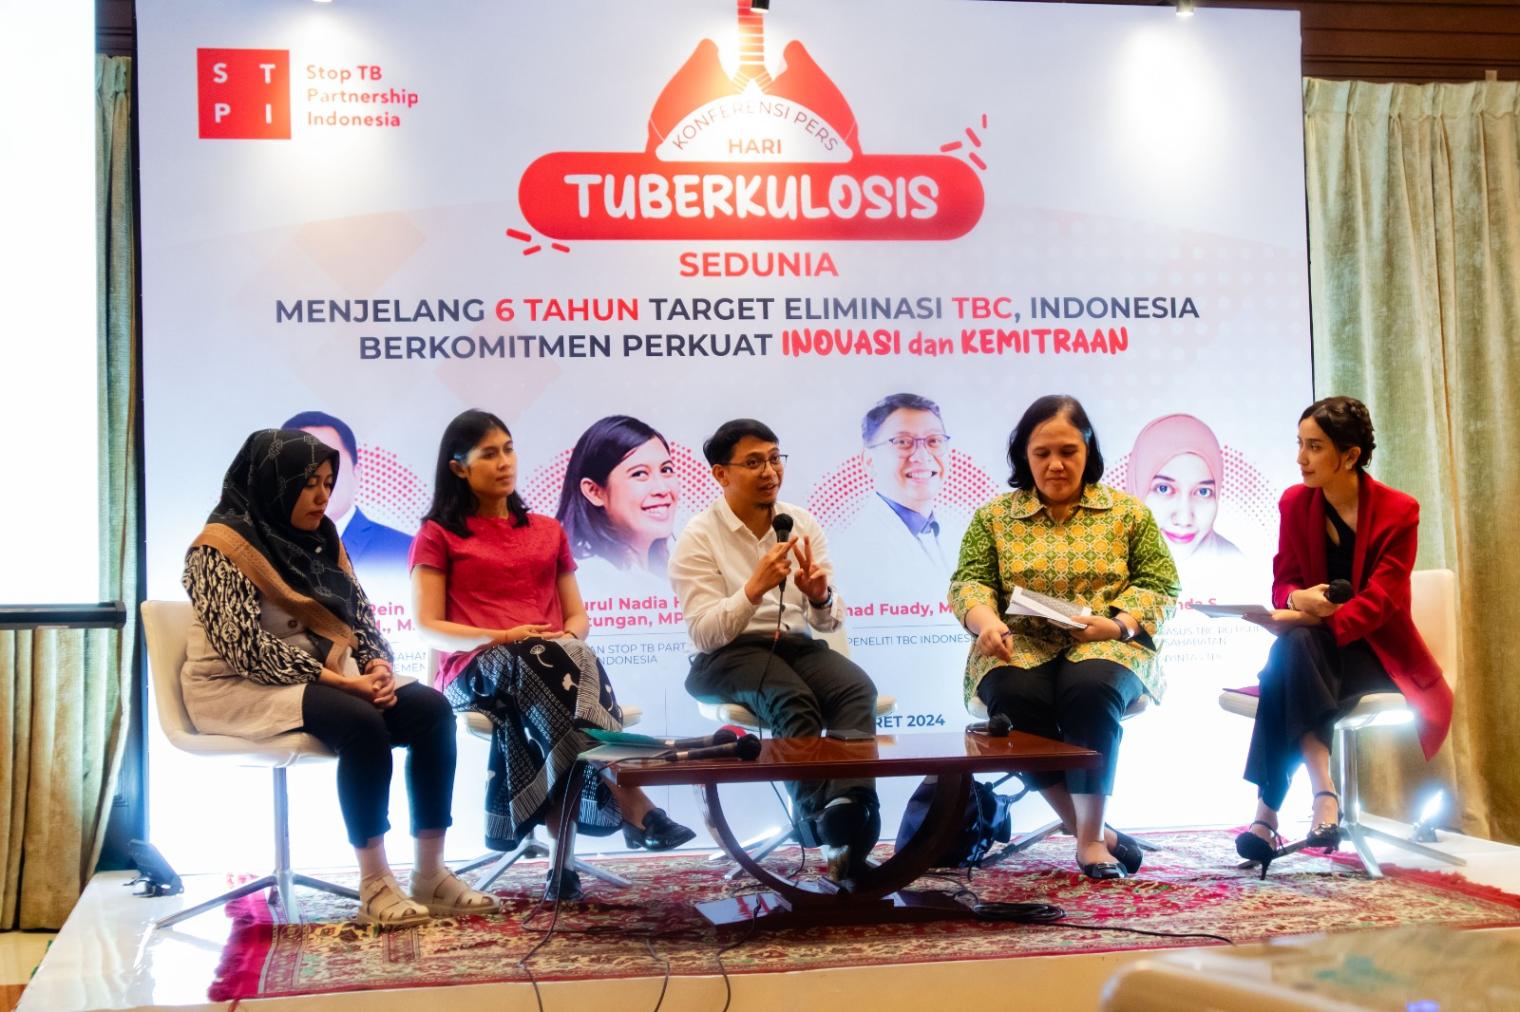 STPI gelar diskusi edukasi kesehatan bertema “Menjelang 6 Tahun Target Eliminasi TBC, Indonesia Berkomitmen Perkuat Inovasi dan Kemitraan” pada Senin (25/3/24) di Jakarta